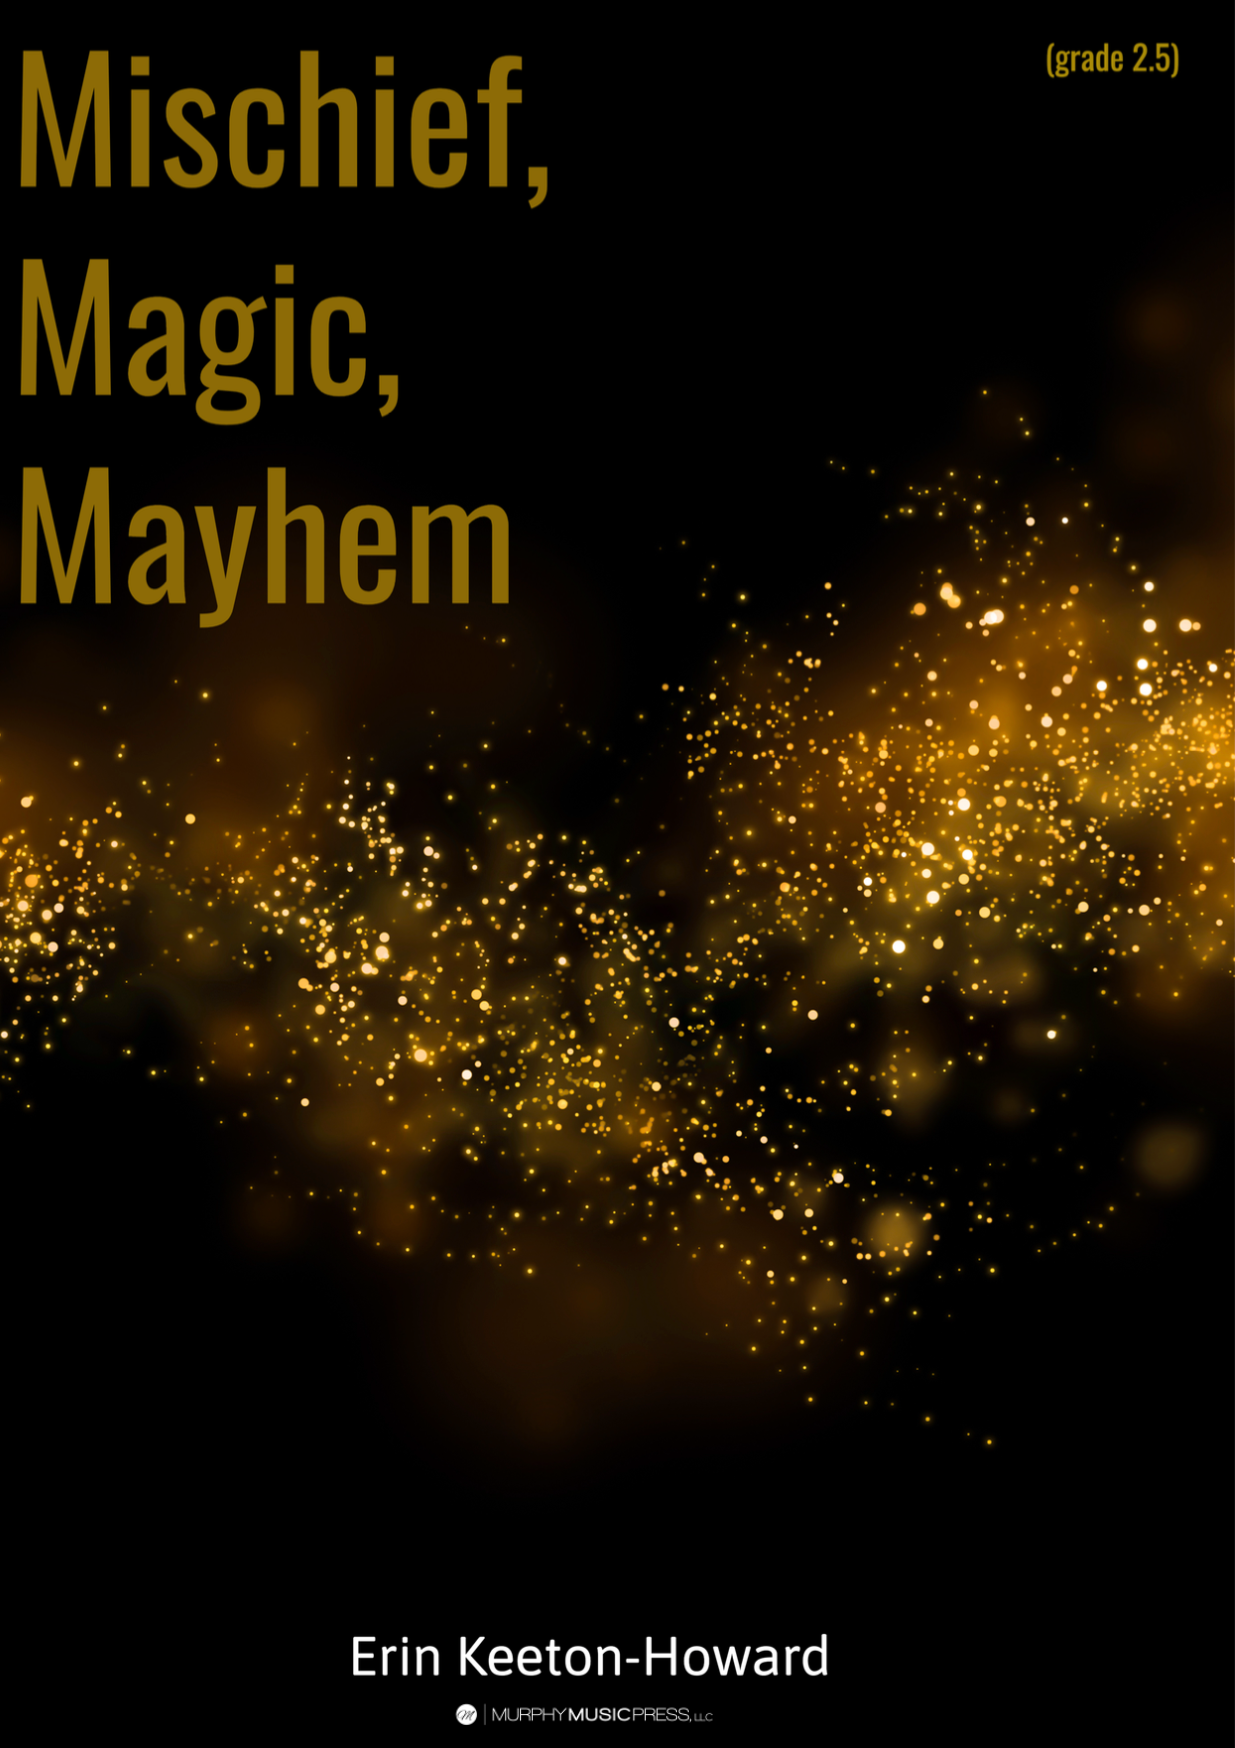 Grade 2.5 - Mischief, Magic and Mayhem - Erin Keeton-Howard - Hardcopy Sc & Pts